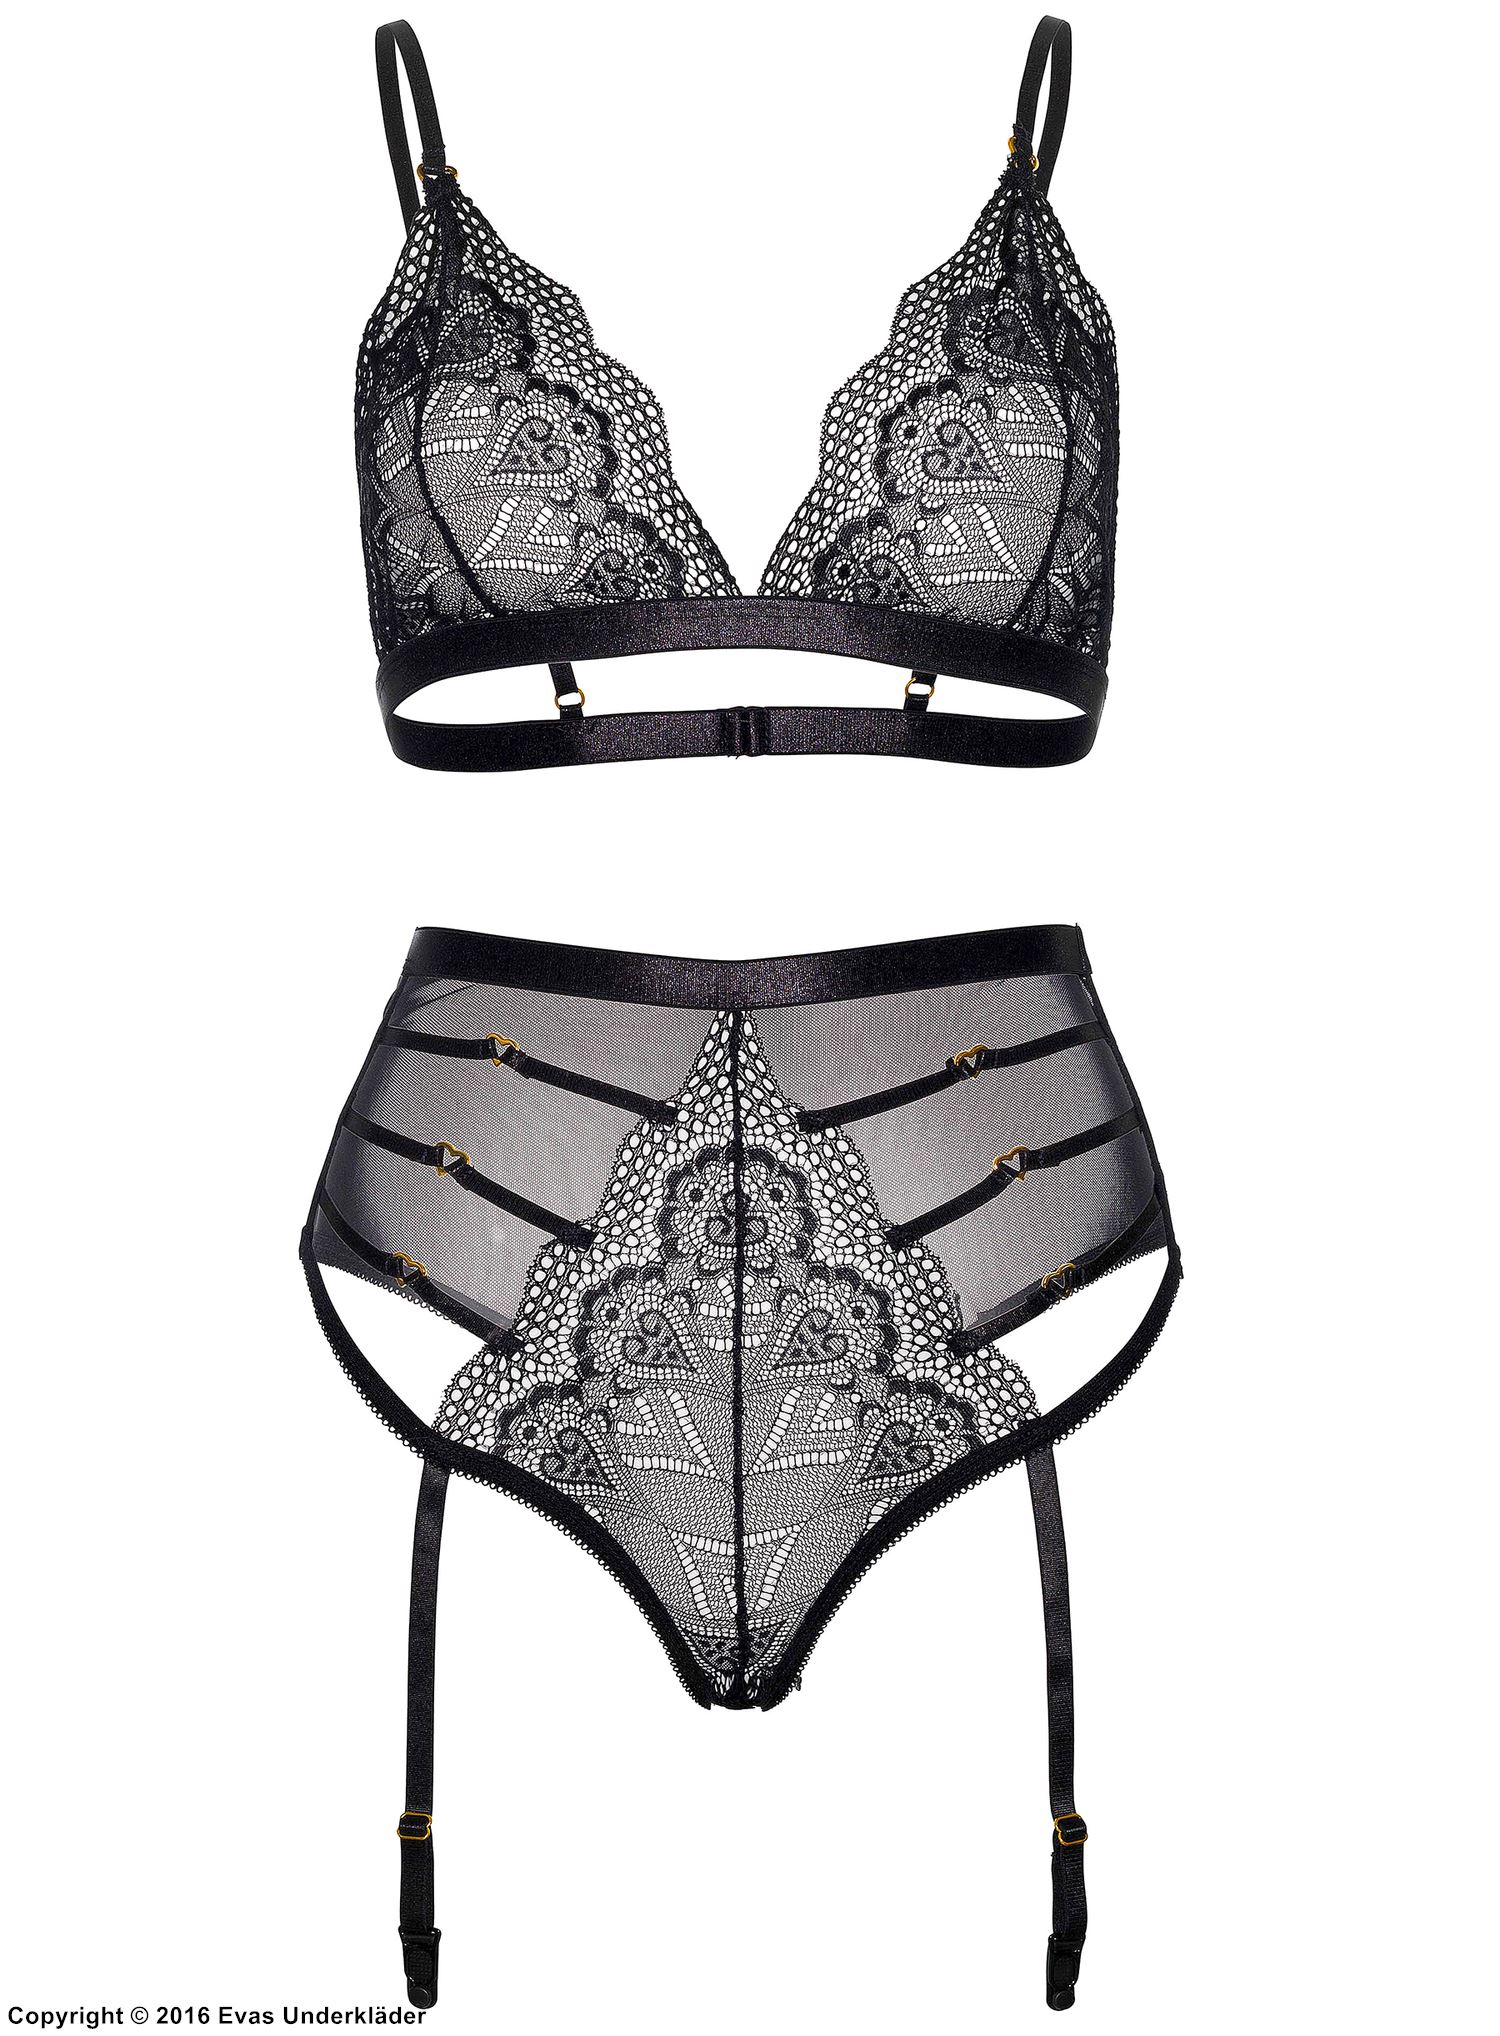 Seductive lingerie set, lace, built-in garter belt, thin straps